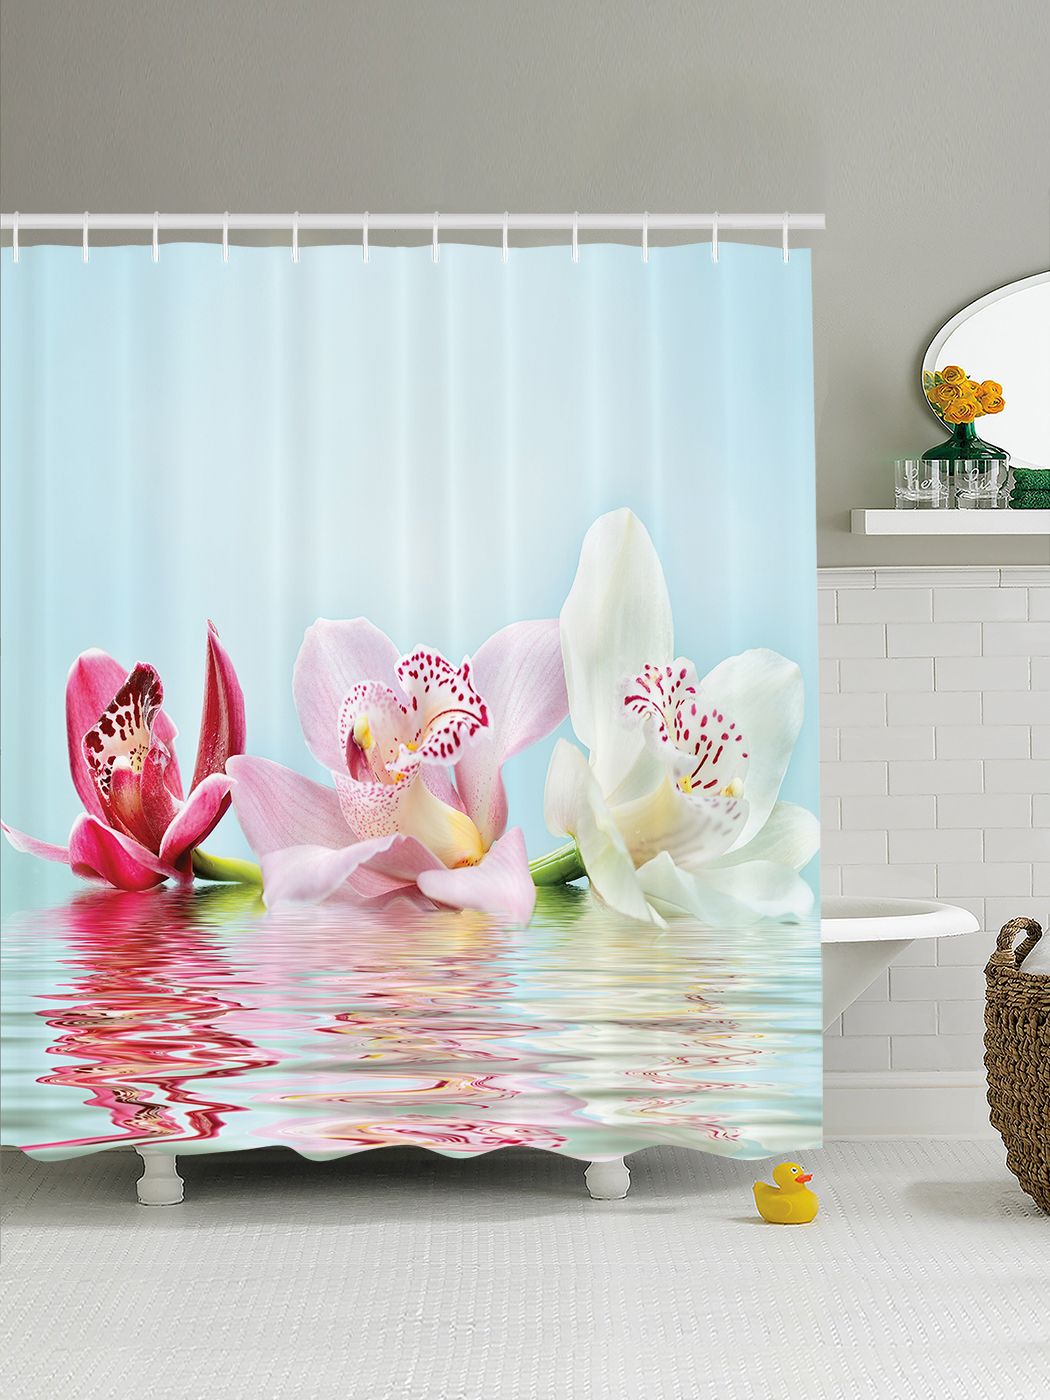 Шторка для ванной 180. Штора для ванной Валиант 3д. JOYARTY шторы для ванной. Шторки в ванную комнату с орхидеями. Шторка для ванной "Орхидея".